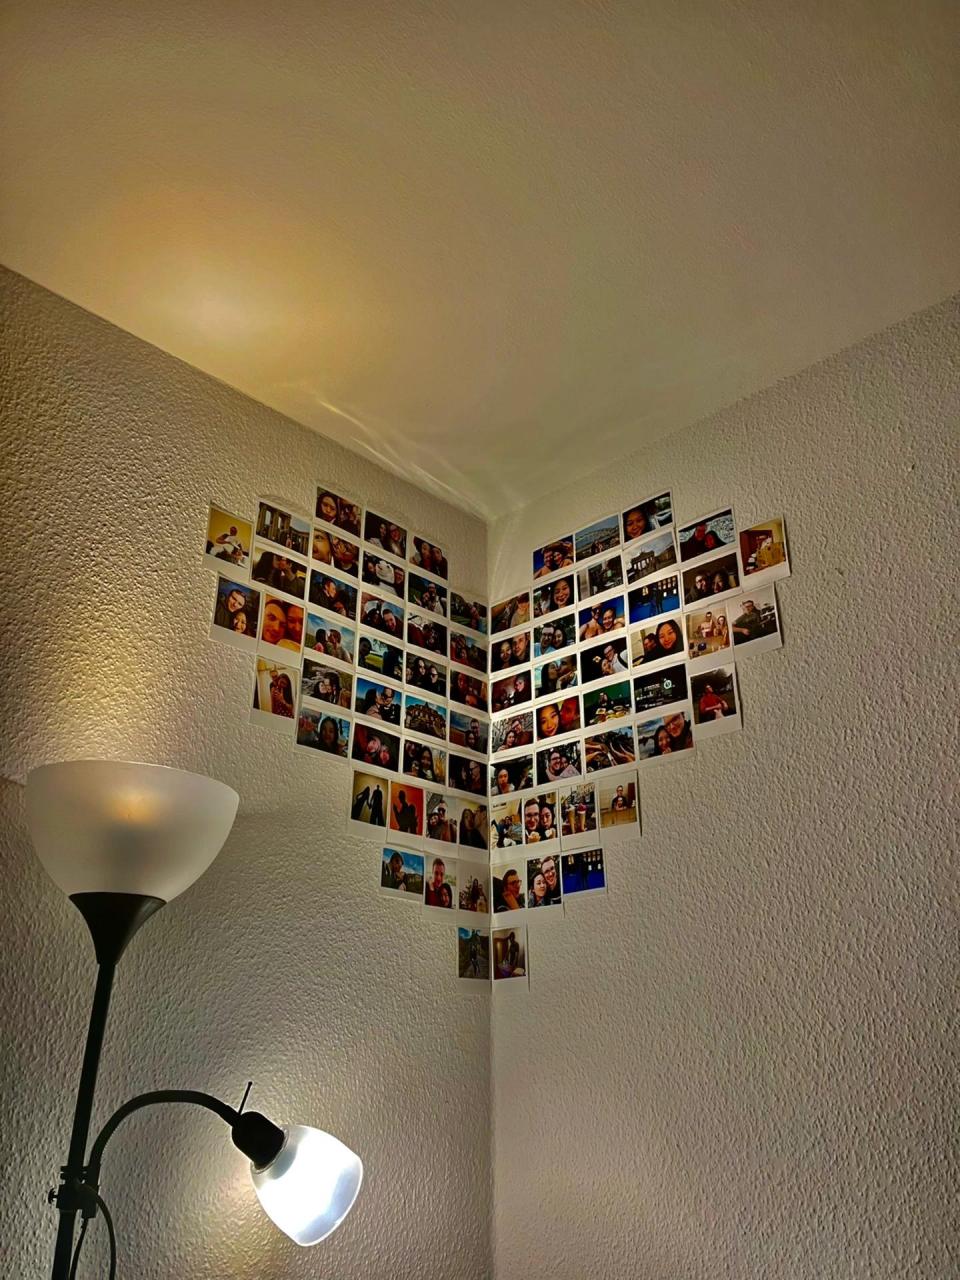 10张照片墙摆放效果图图片